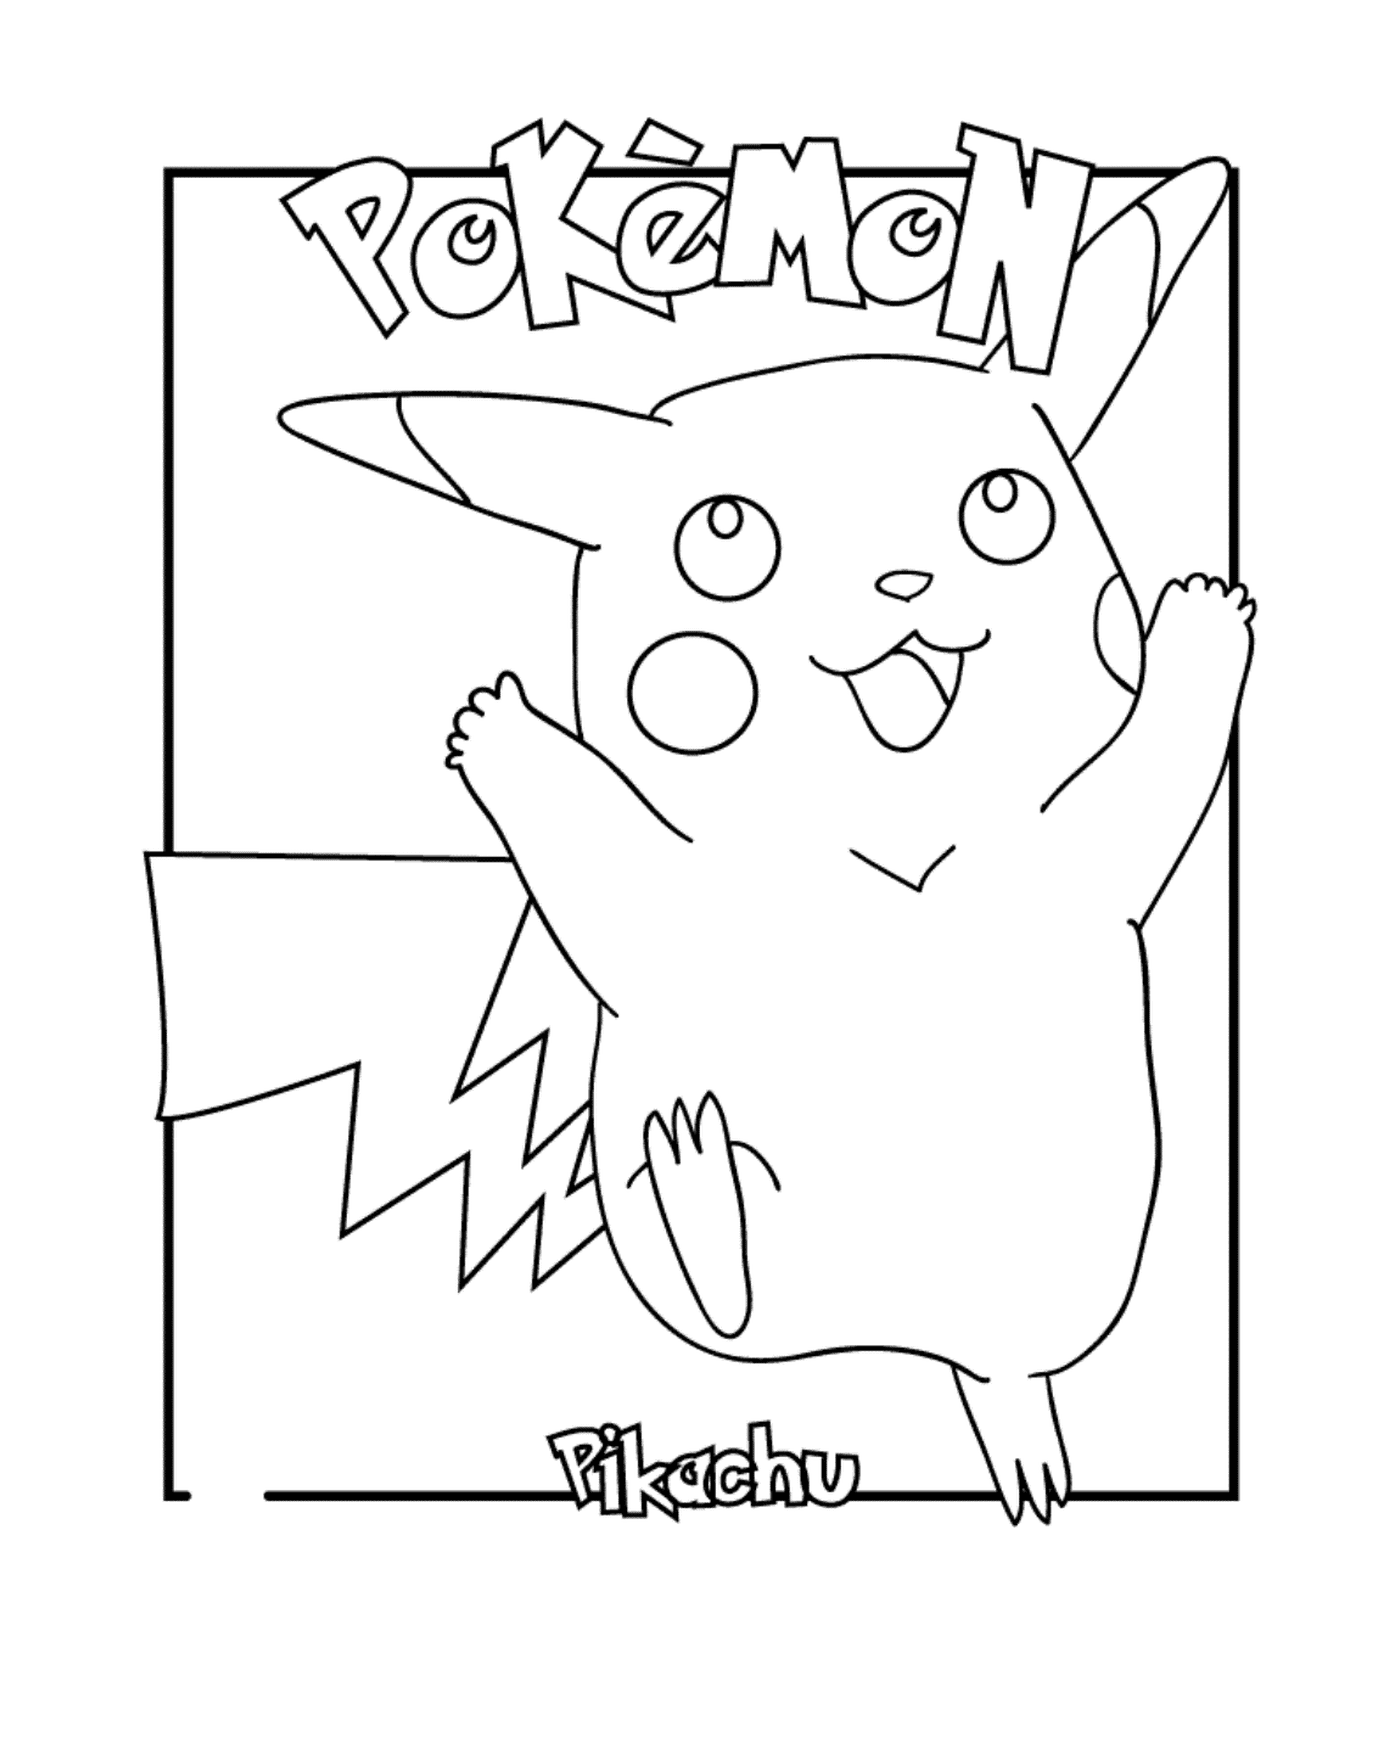  Pikachu, the beloved Pokémon 